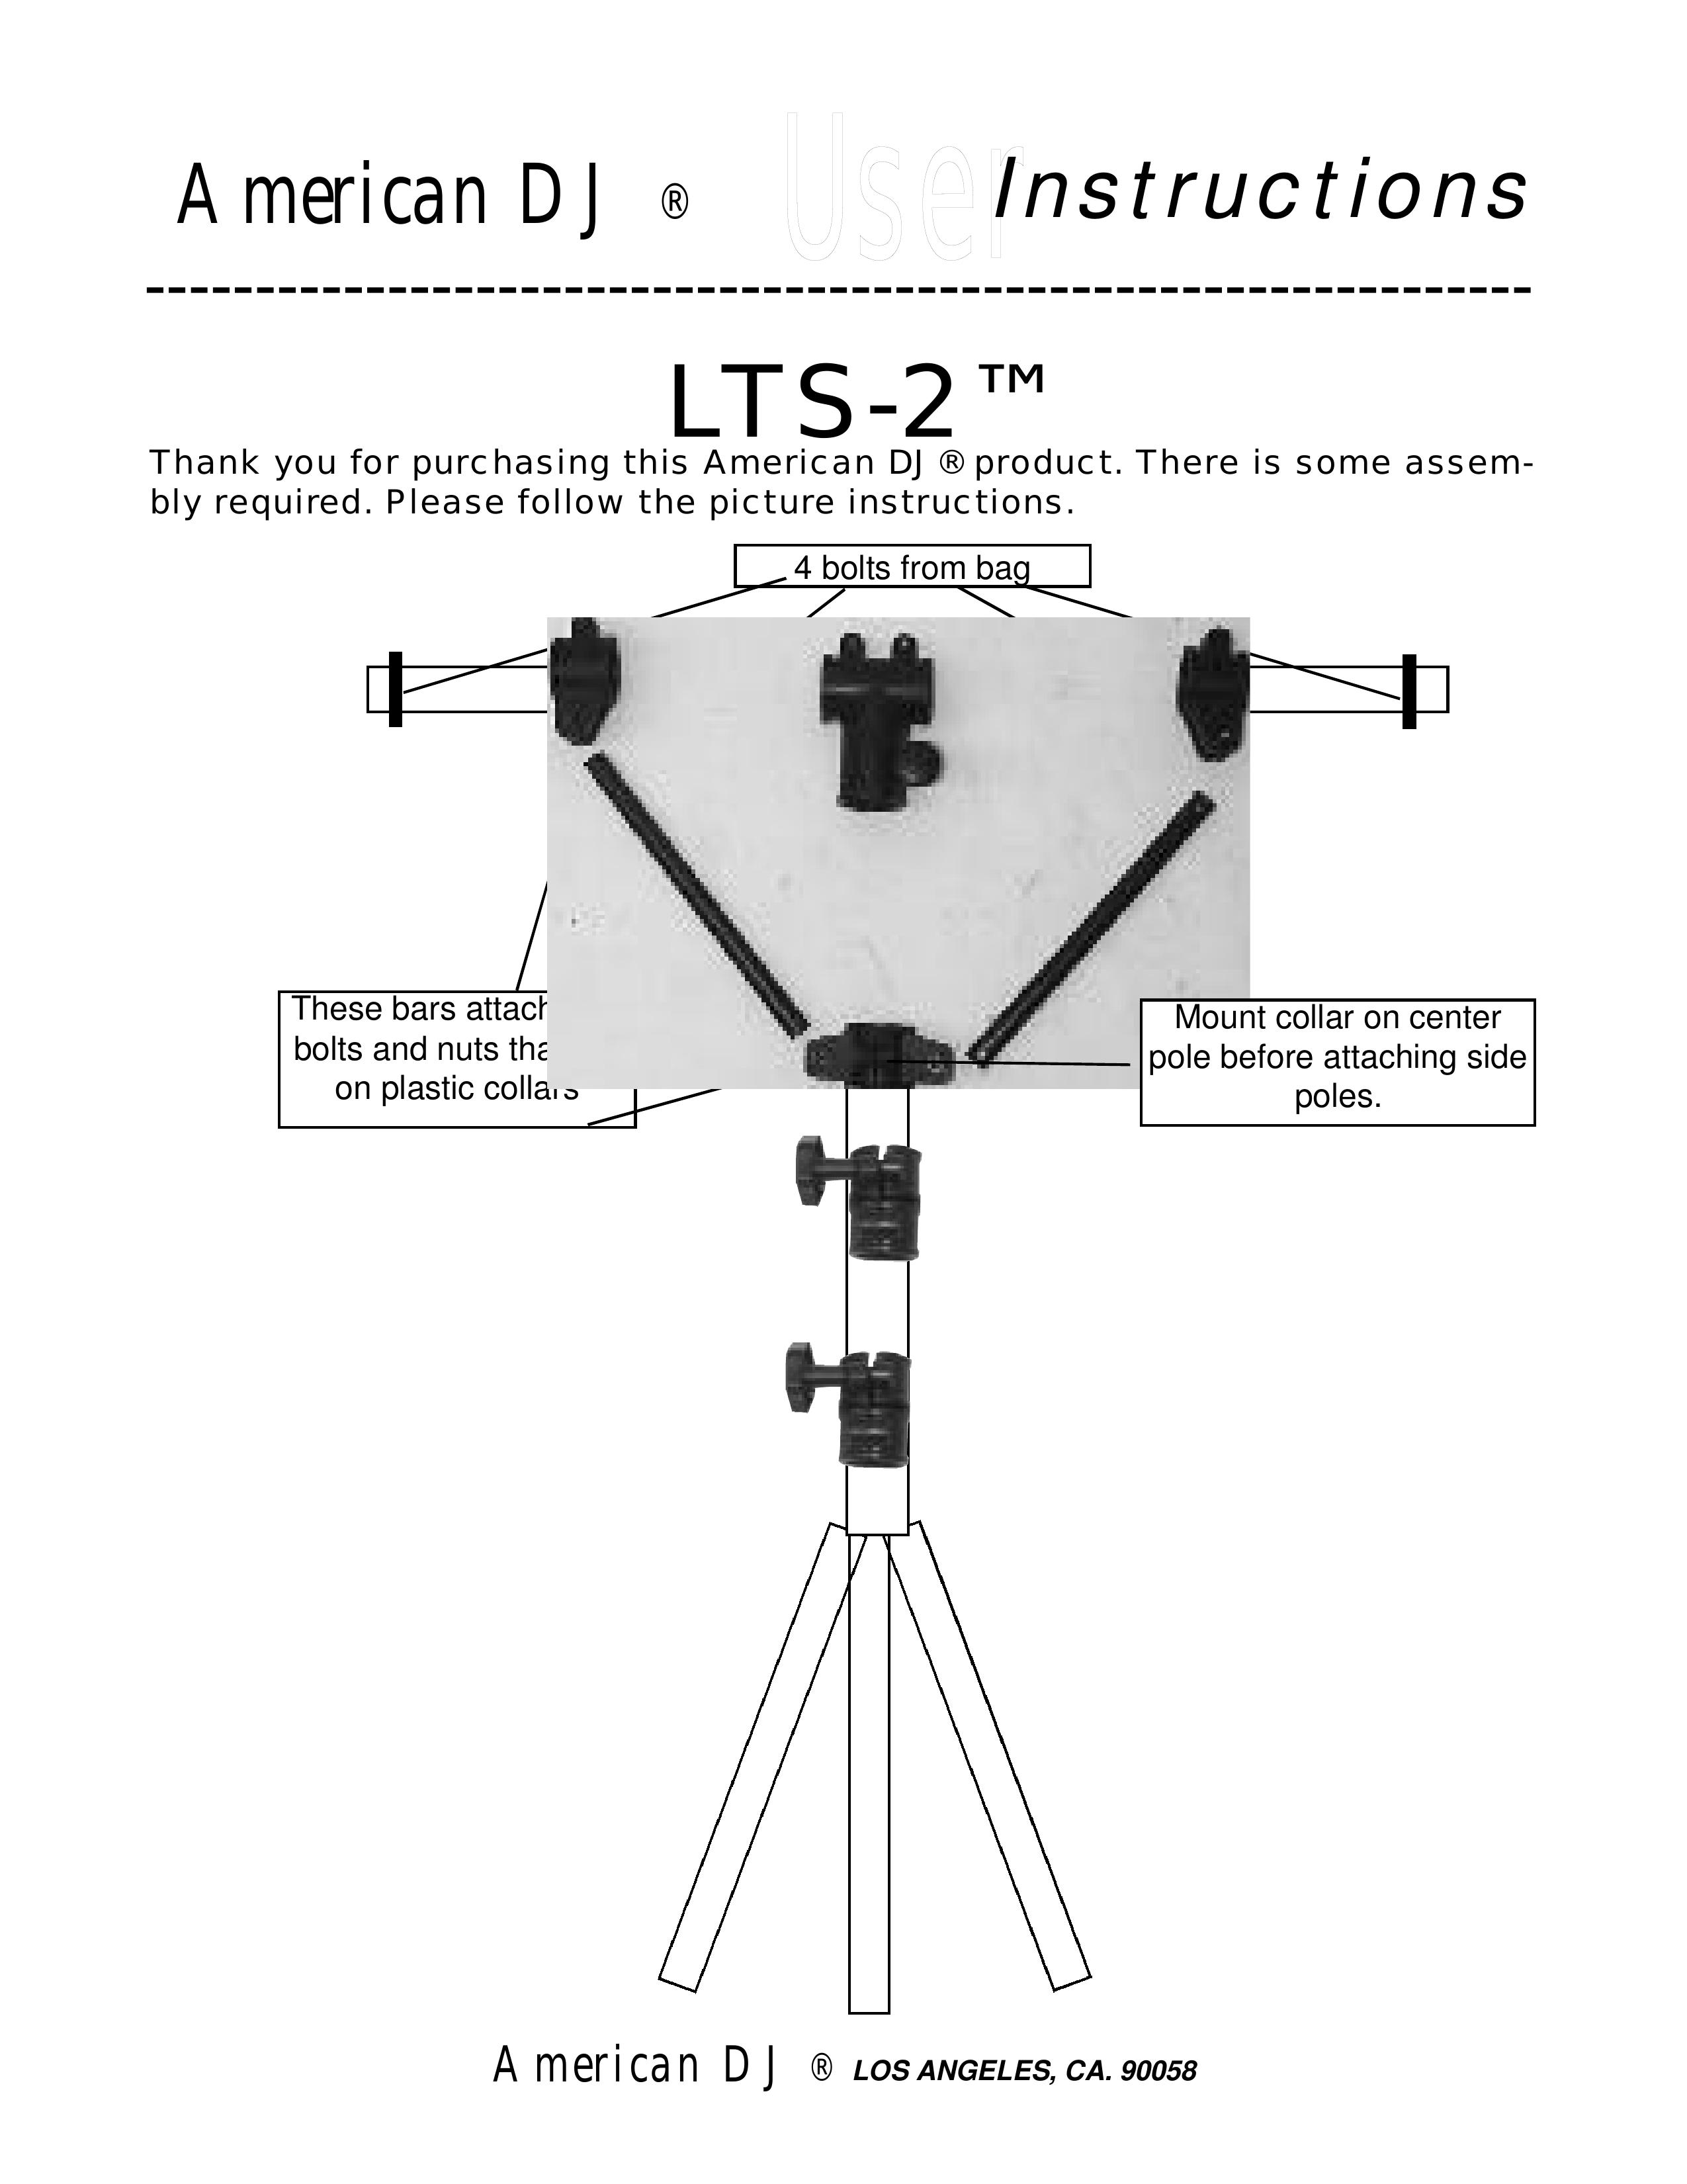 American DJ LTS-2 DJ Equipment User Manual